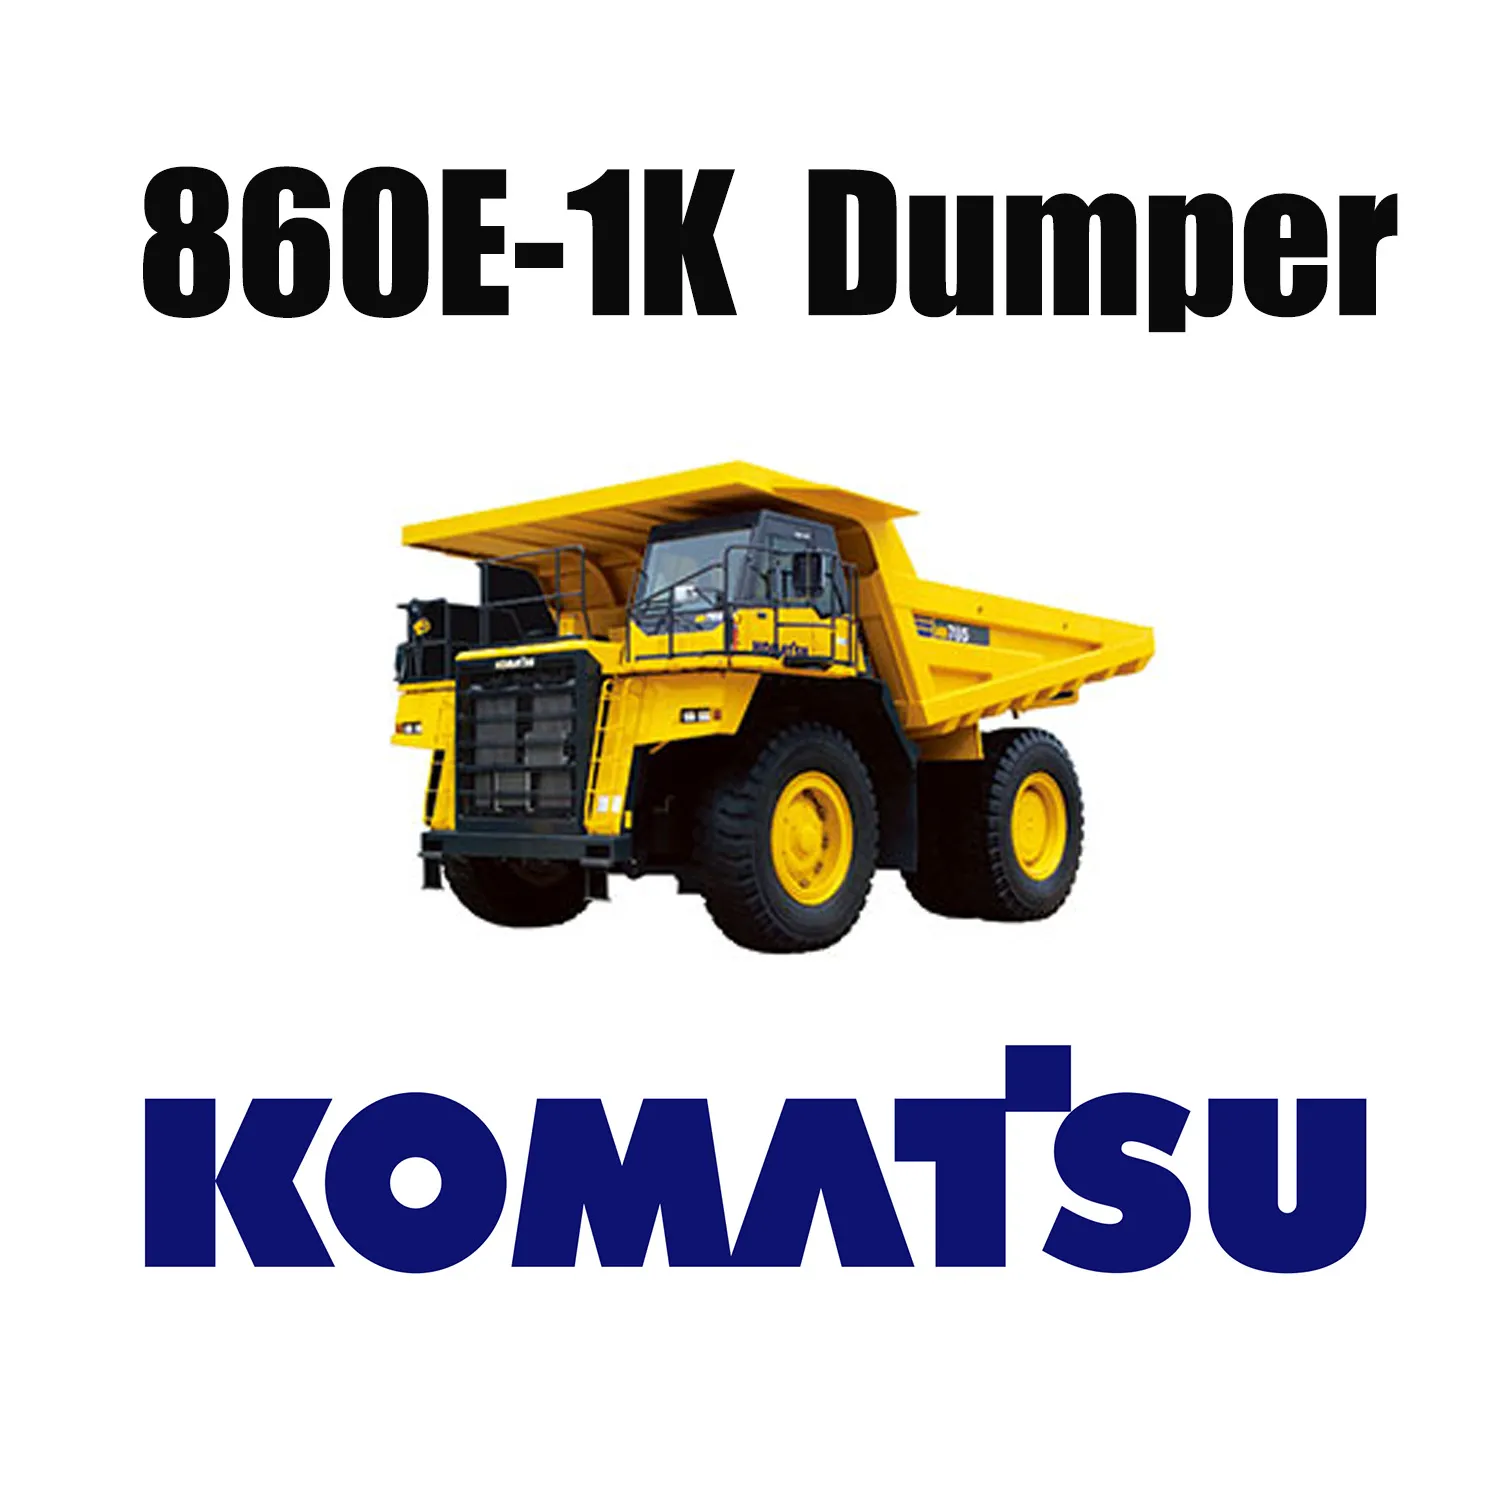 Lốp xe địa hình Giant 50 / 80R57 được sử dụng trên mỏ than cho KOMATSU 860E-1K